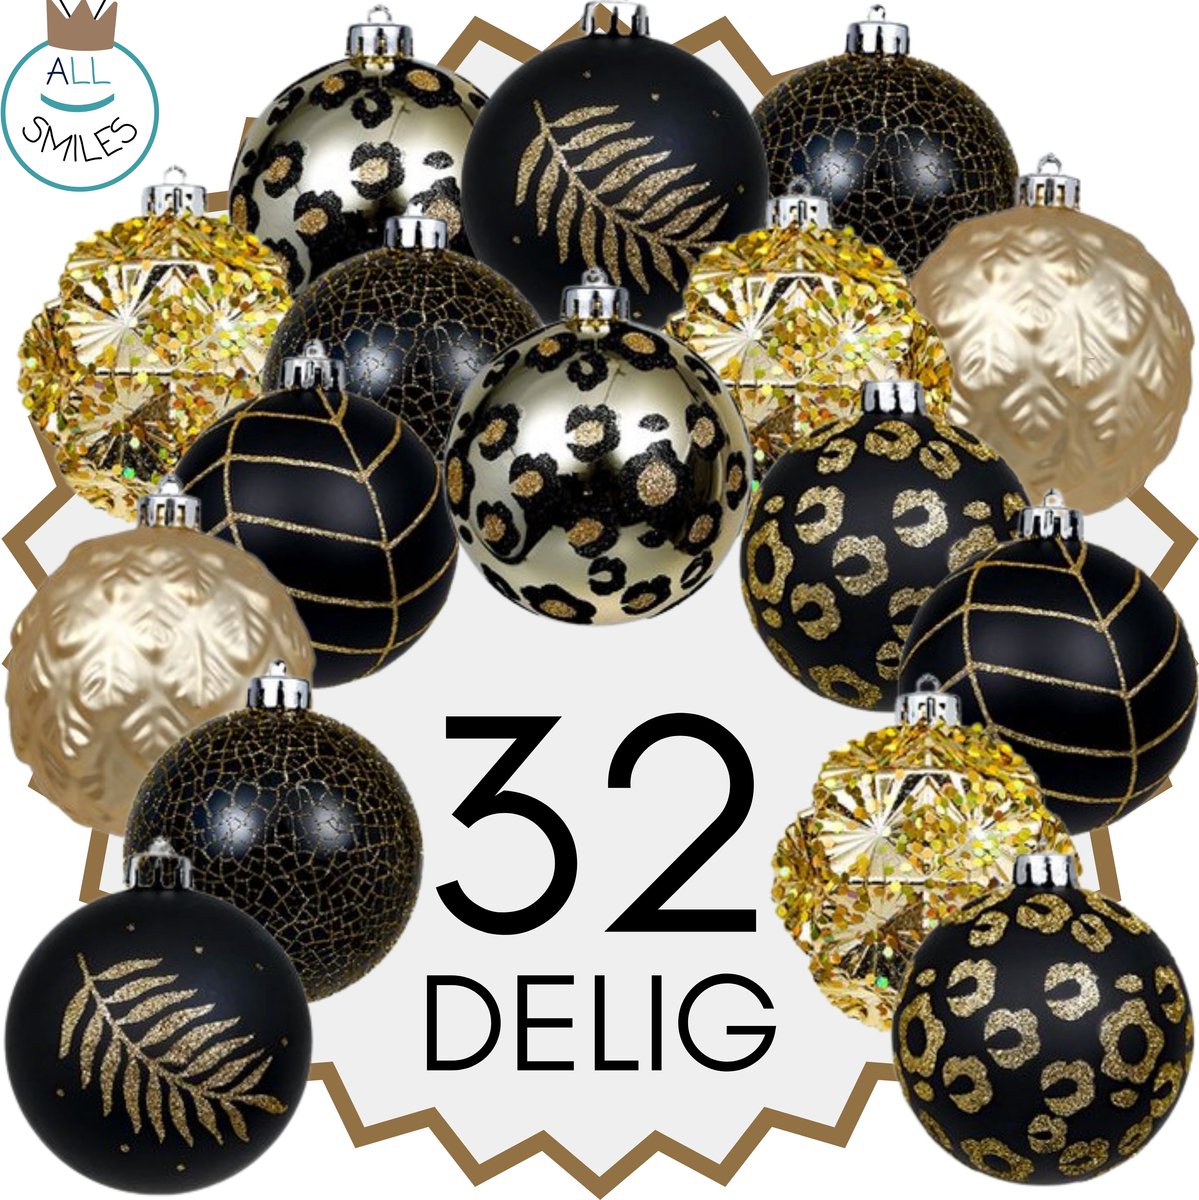 Kerstballen - 32 Delige Set - Kerstversiering - Goud - Zwart - Verschillende Afwerkingen - Kerstboom Kerstballen - Voor in de kerstboom